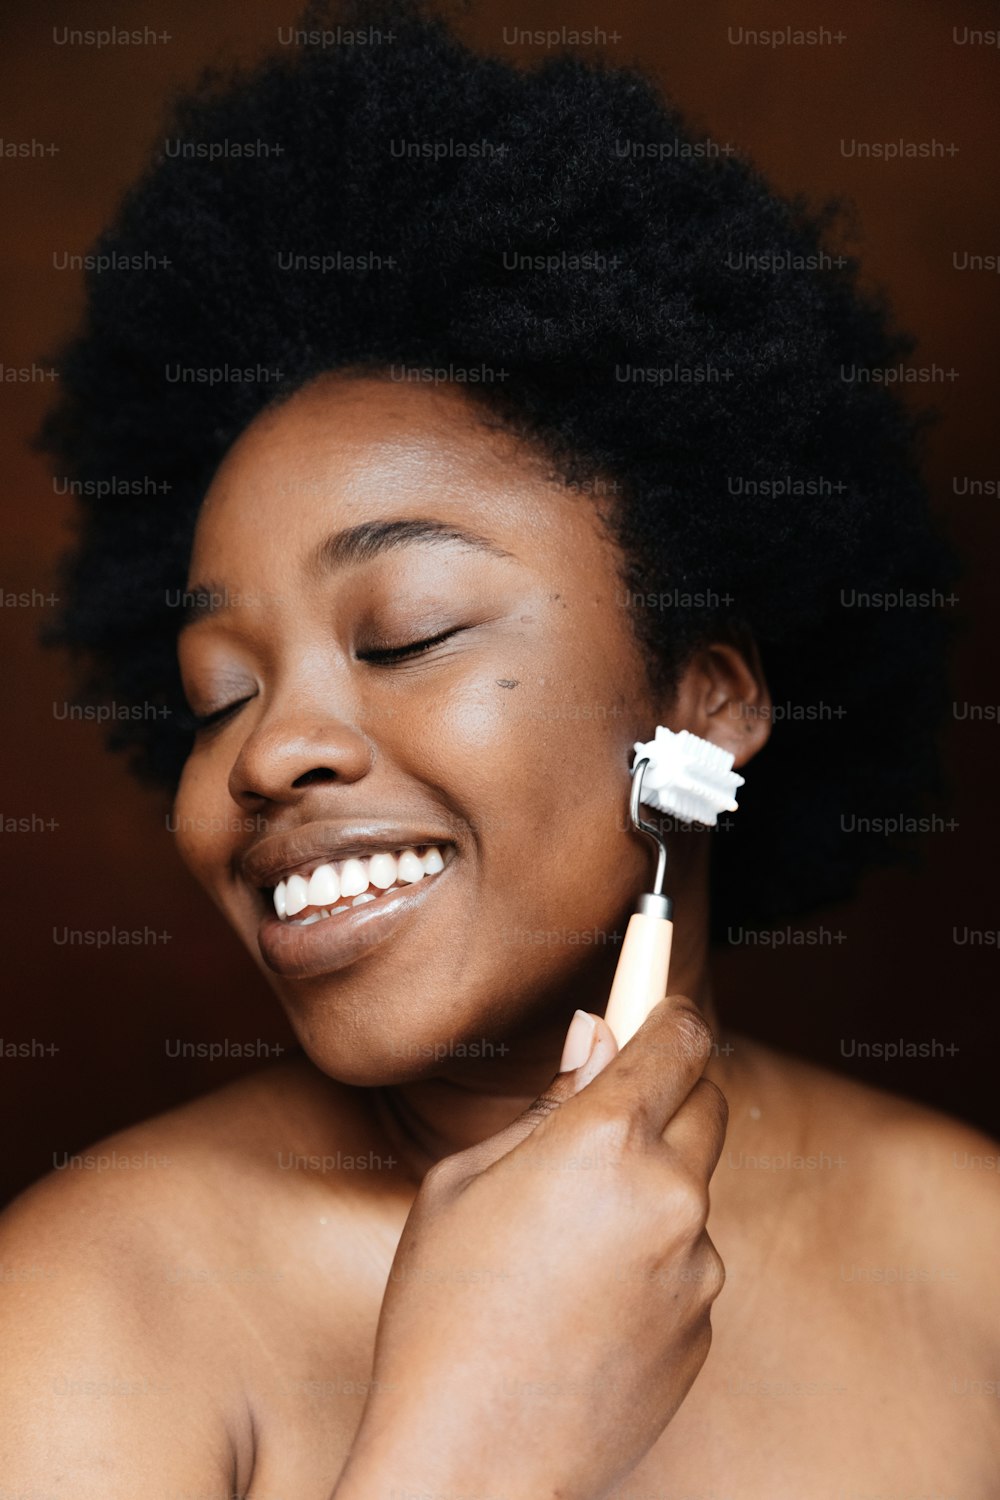 電動歯ブラシで歯を磨く女性